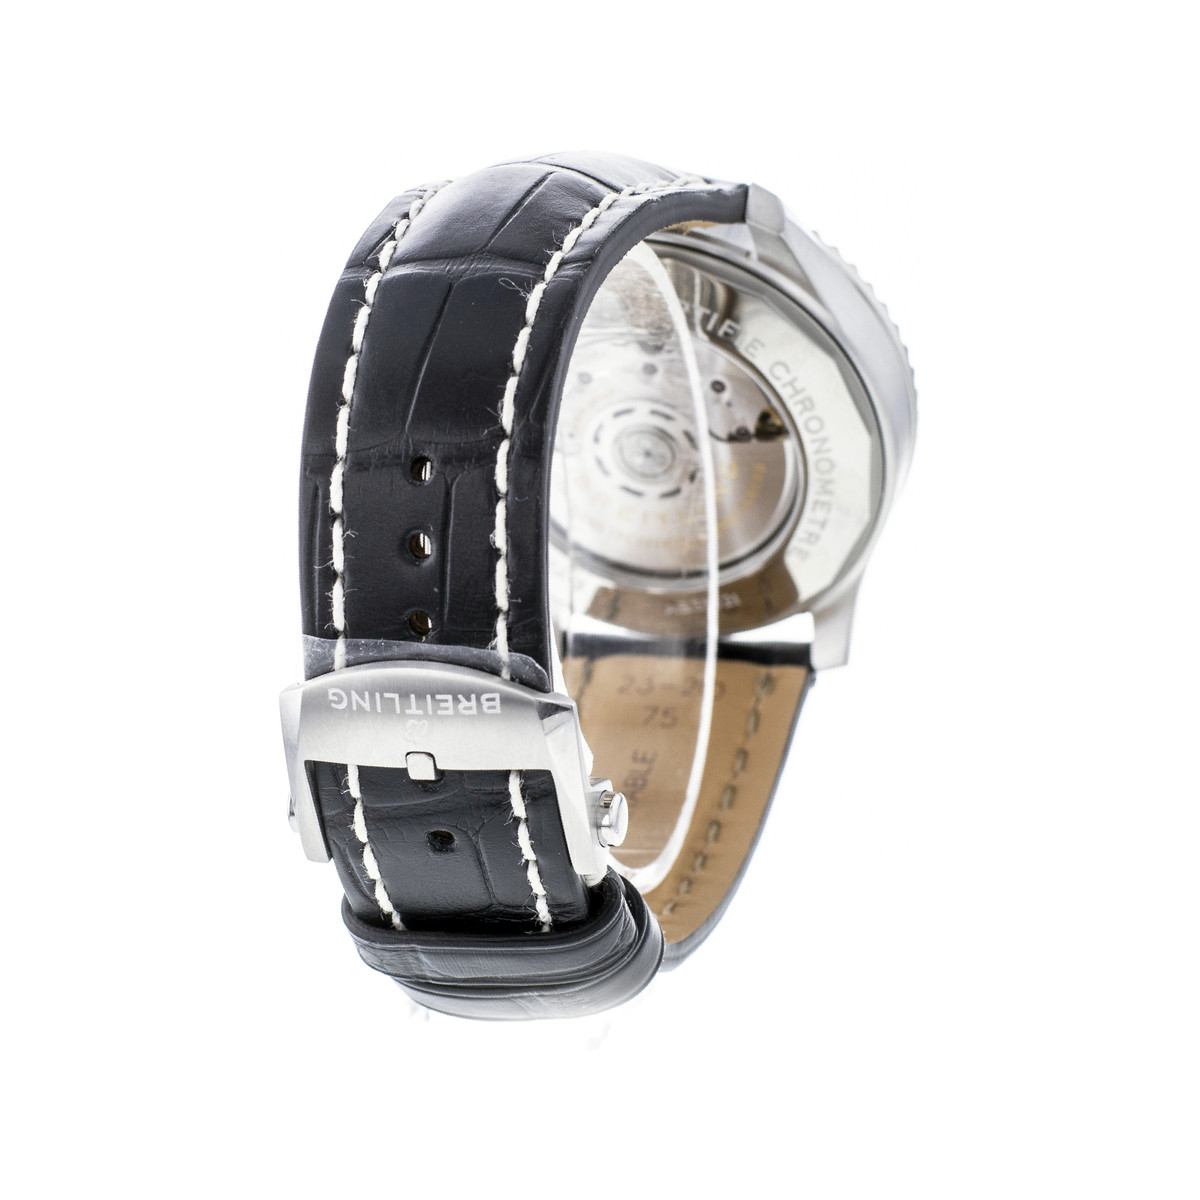 Montre d'occasion Breitling Navitimer Aviateur homme acier bracelet cuir noir - vue 3